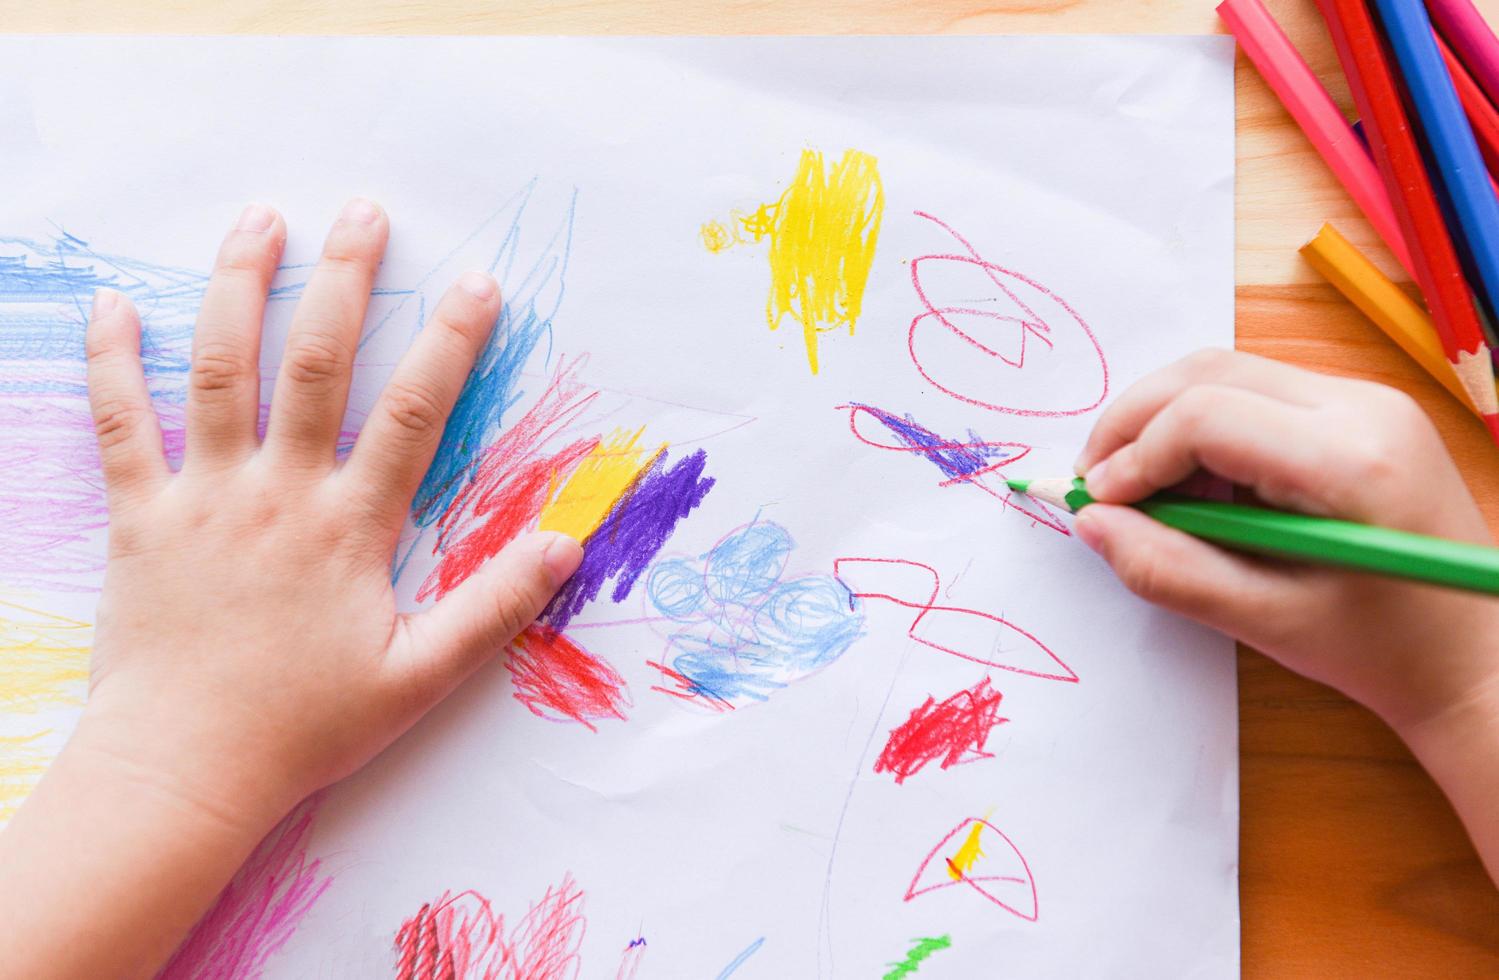 Mädchen malen auf Papierblatt mit Farbstiften auf dem Holztisch zu Hause - Kind macht Zeichnungsbild und bunte Kreide foto